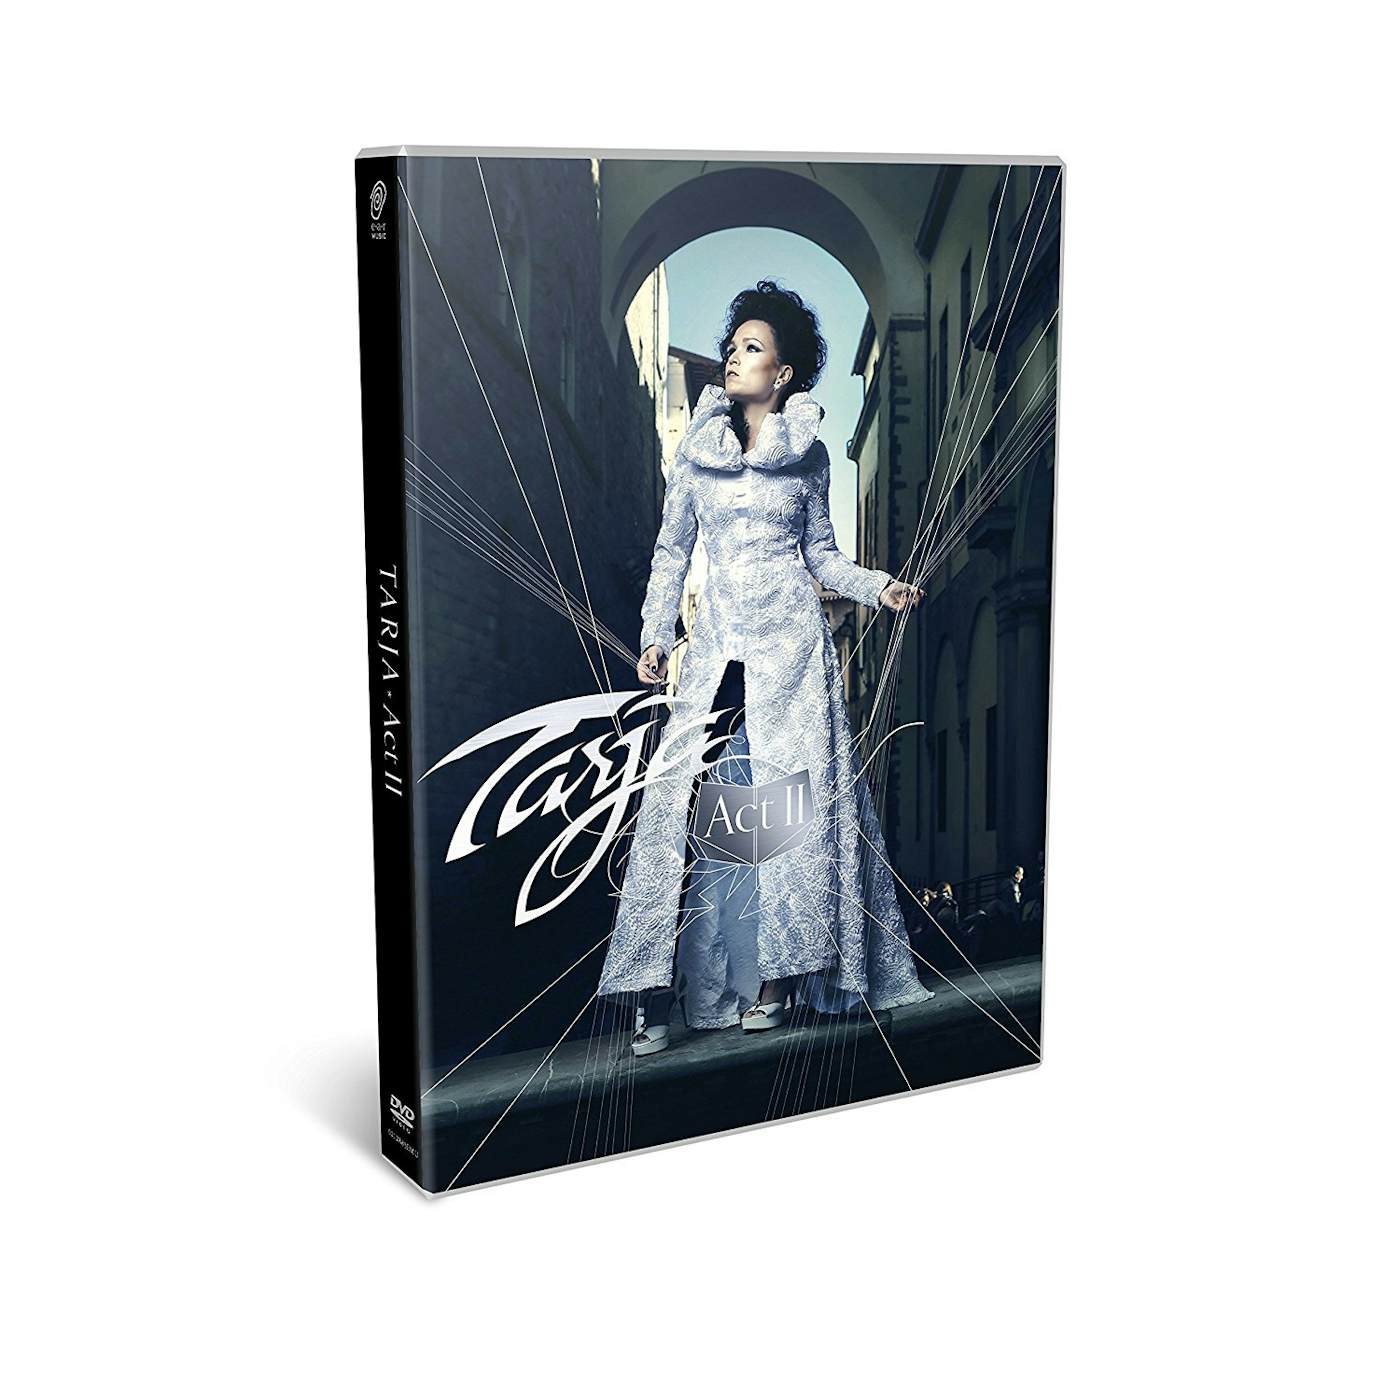 Tarja ACT II DVD